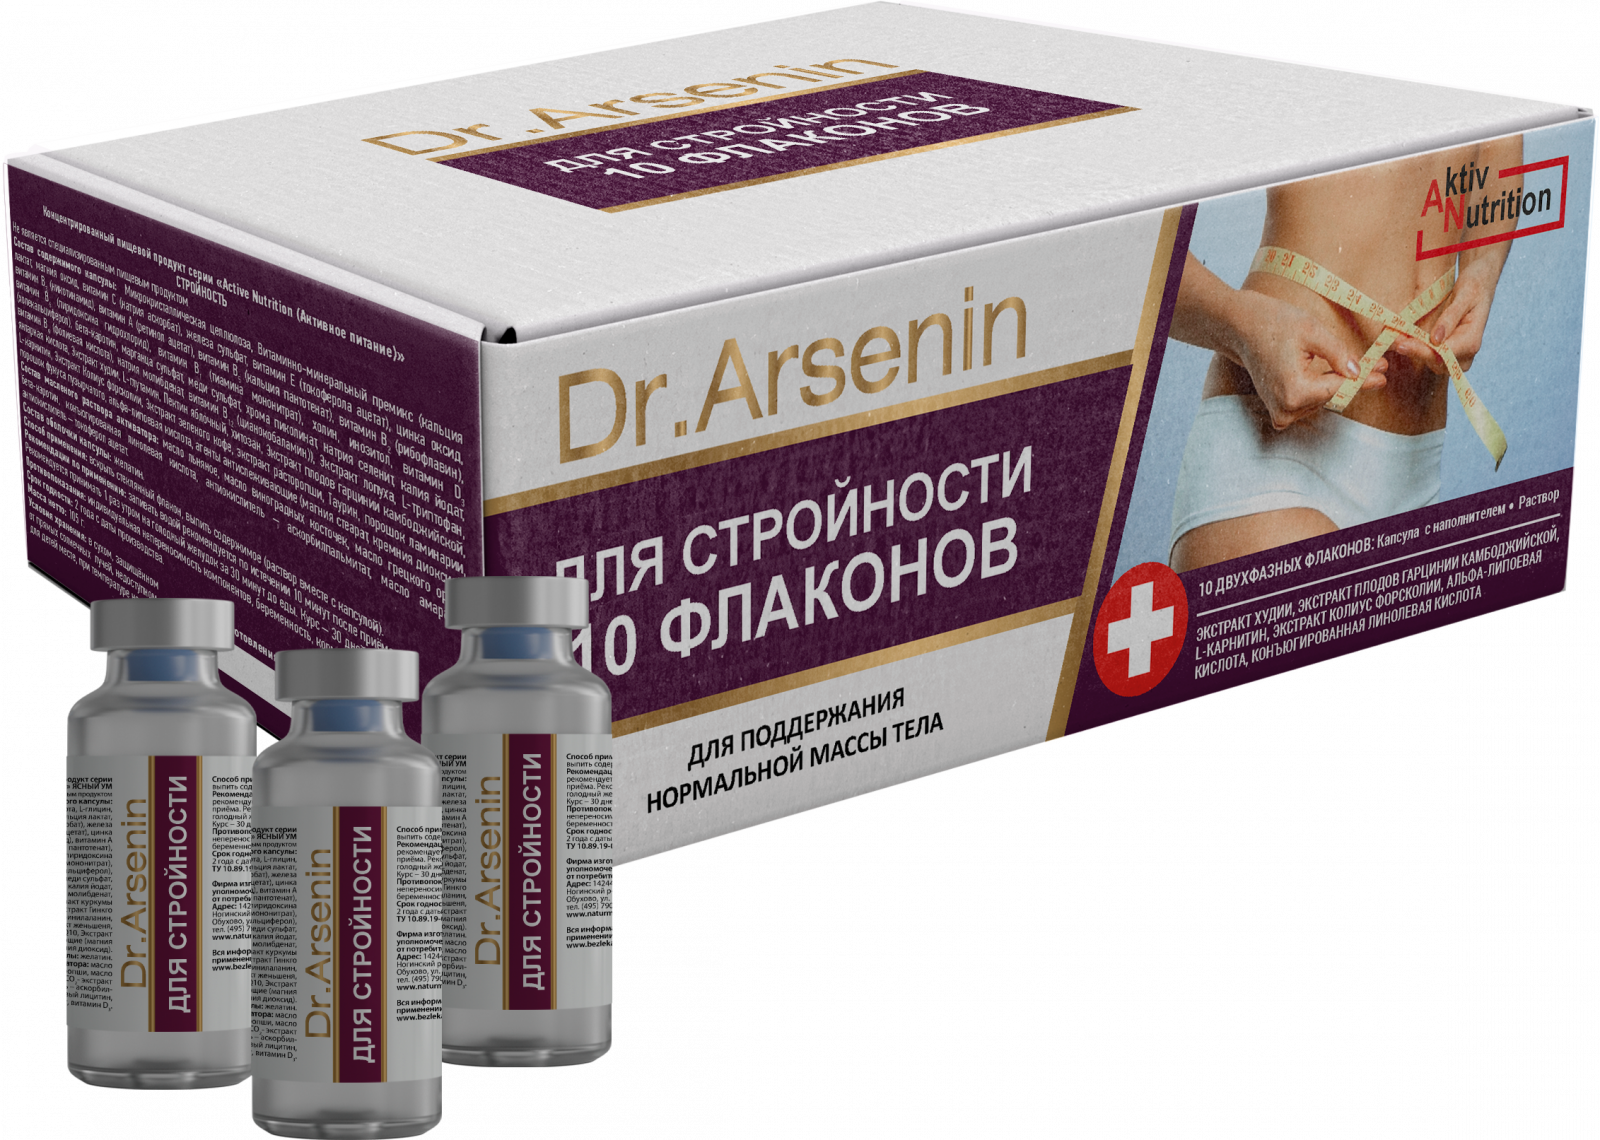  «"Active nutrition" СТРОЙНОСТЬ Dr. Arsenin 10 флаконов» - Для приёма внутрь